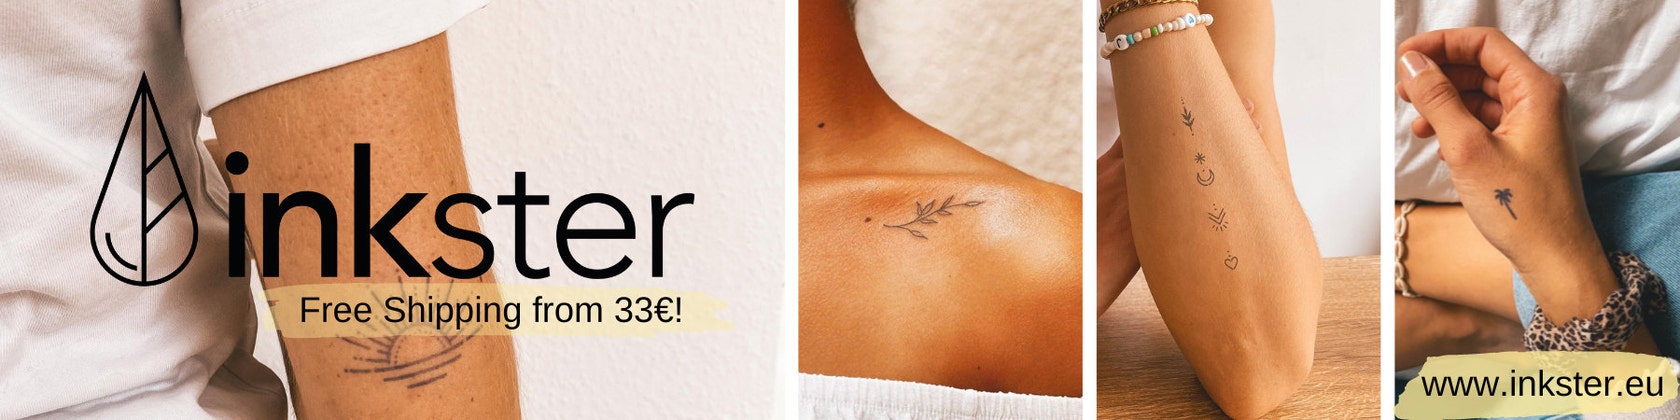 Inkster - The Tattoo Stencil Maker App